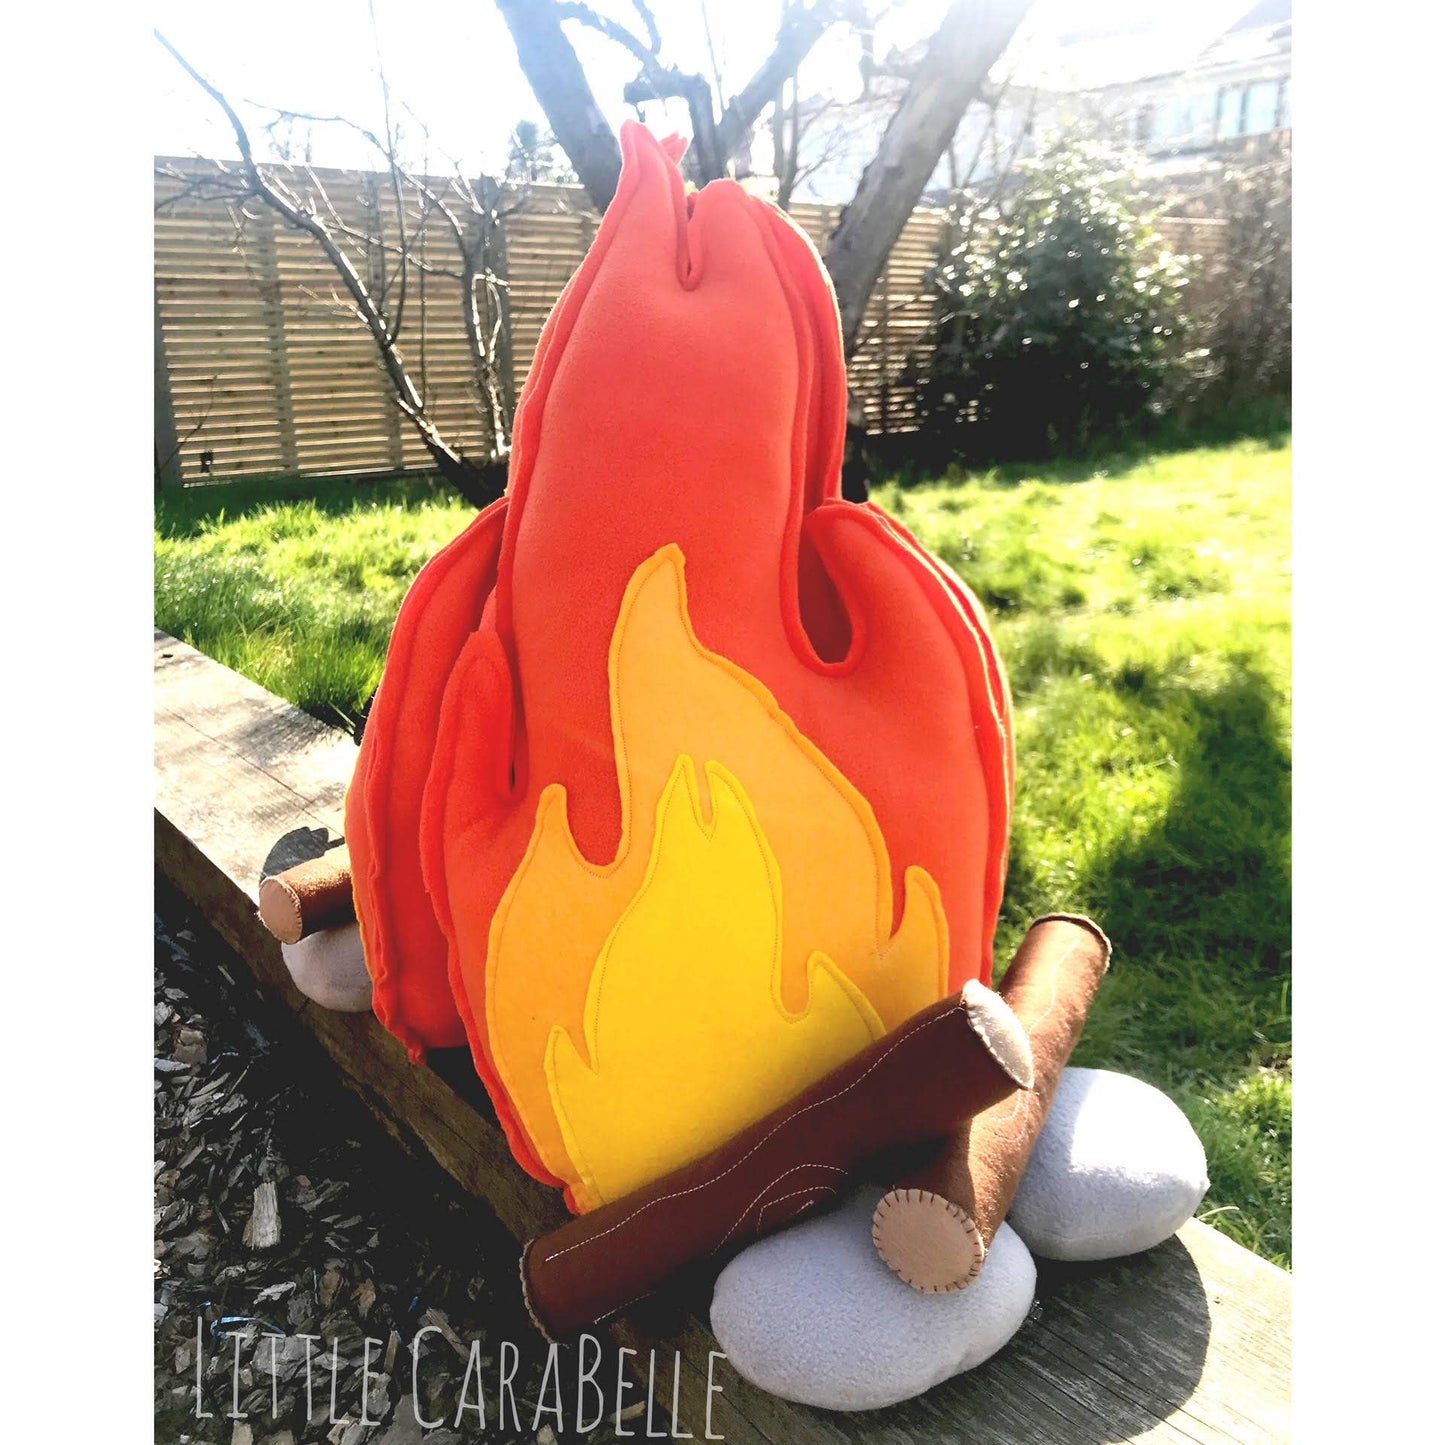 Little CaraBelle - Campfire Pretend Play Set